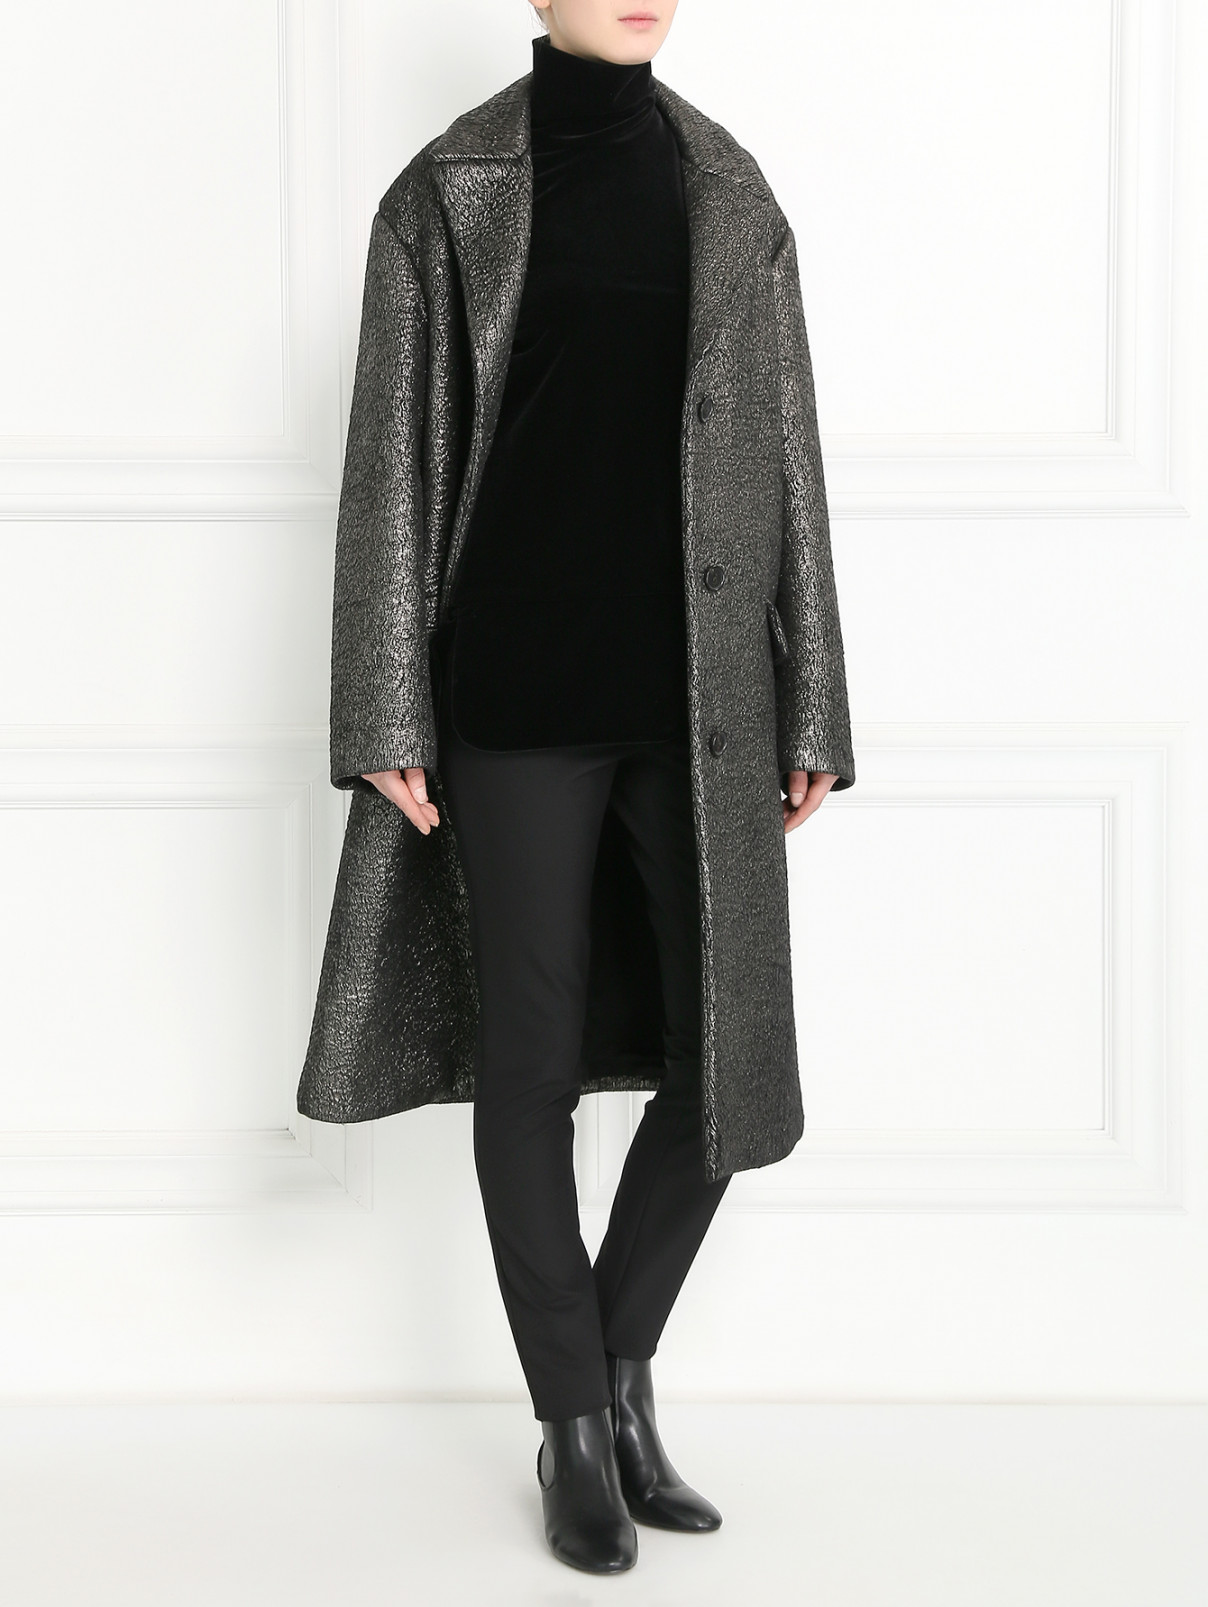 Объемное пальто из альпаки и шерсти Jil Sander  –  Модель Общий вид  – Цвет:  Серый